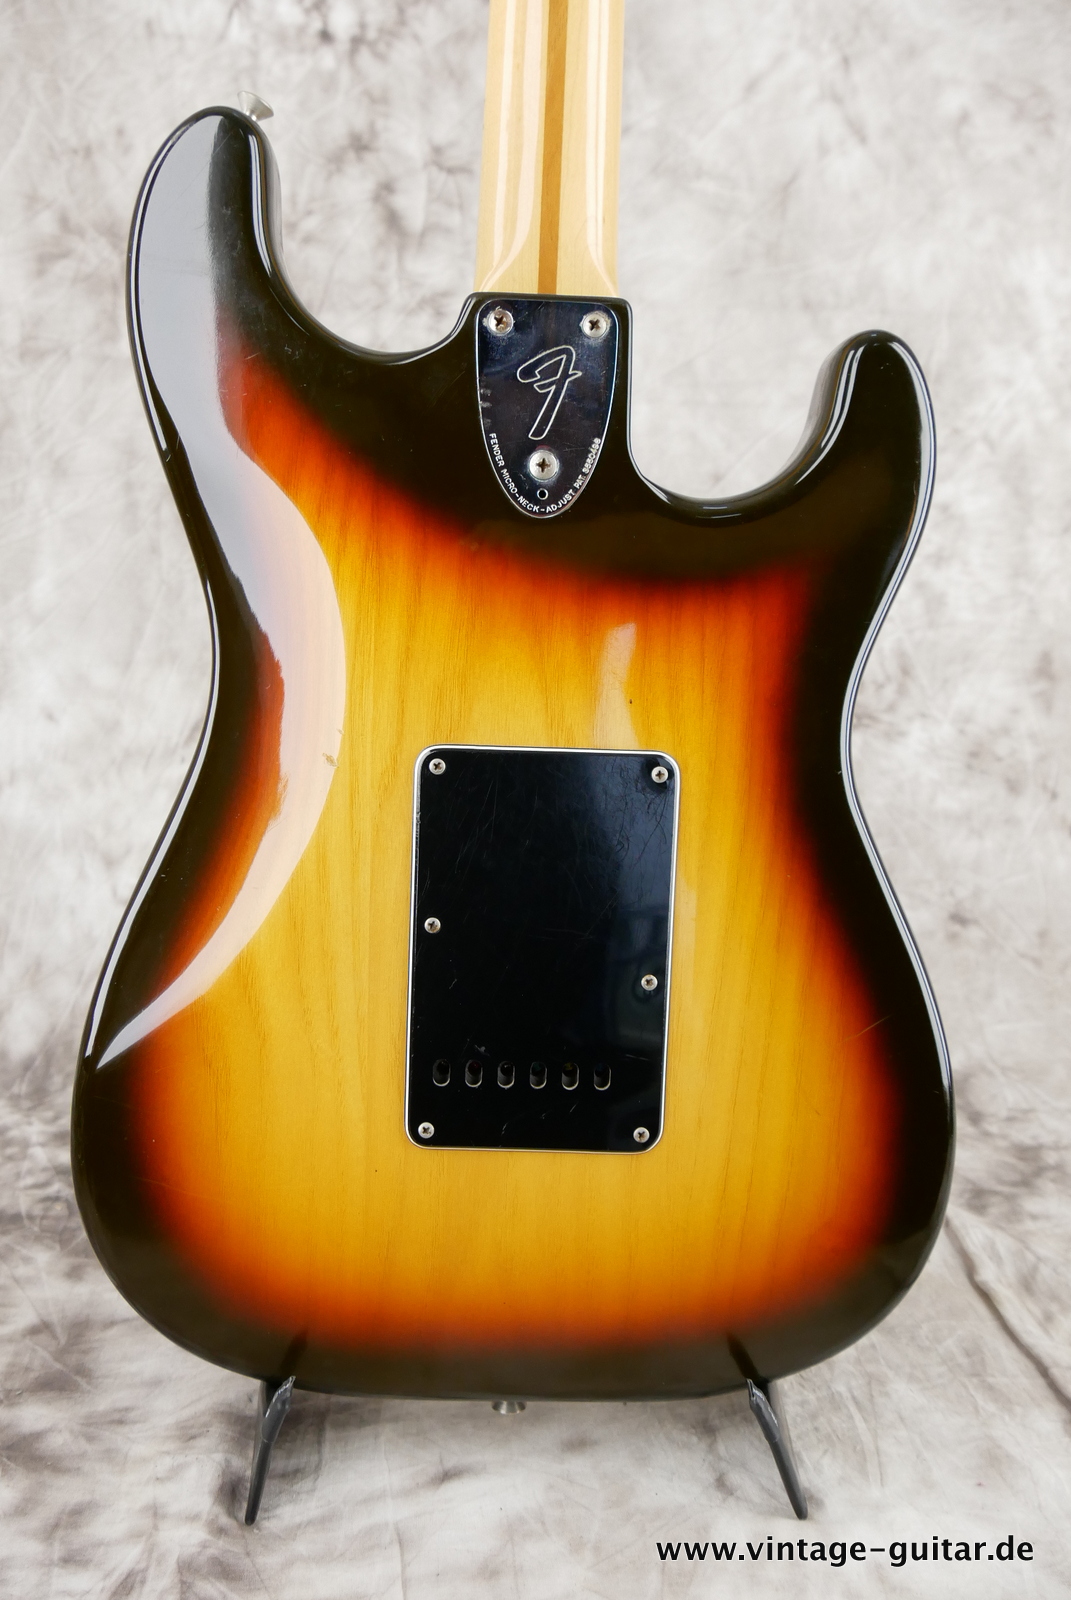 Fender_Left_Hand_Stratocaster_1980_sunburst_usa_maple_neck-008.JPG